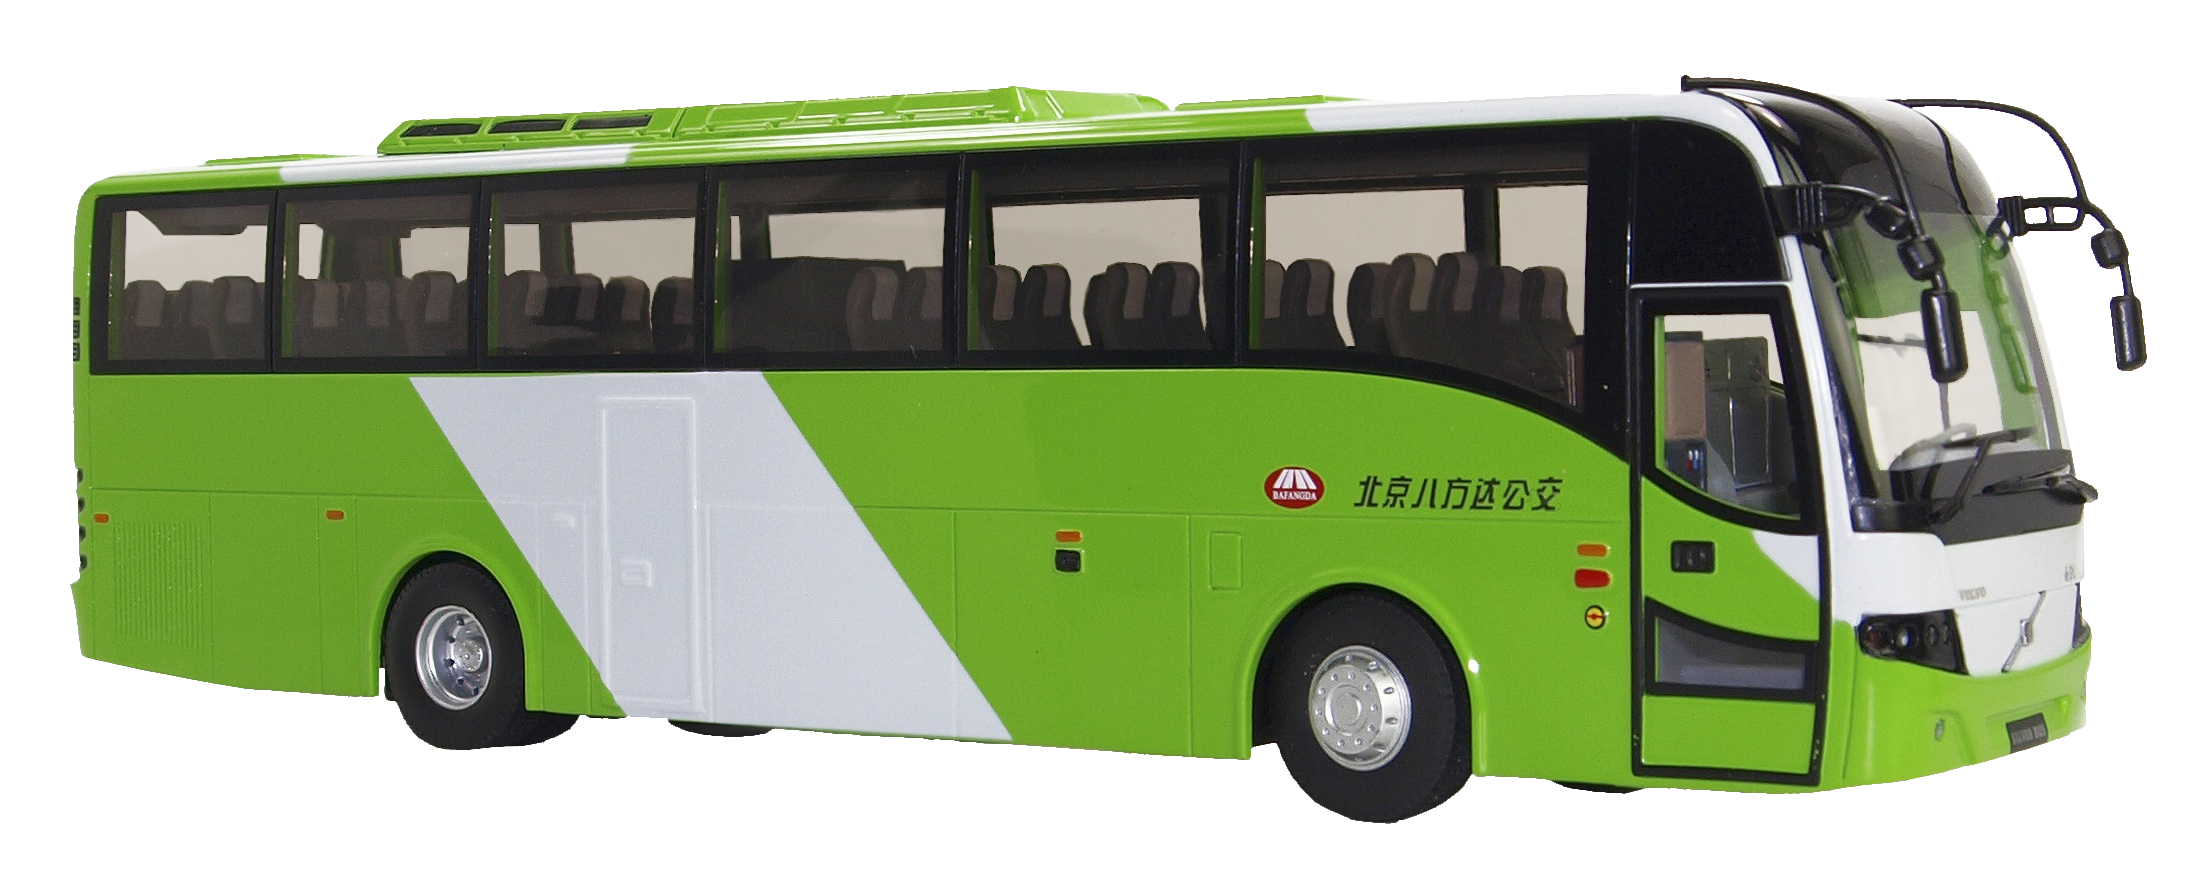 bus-58